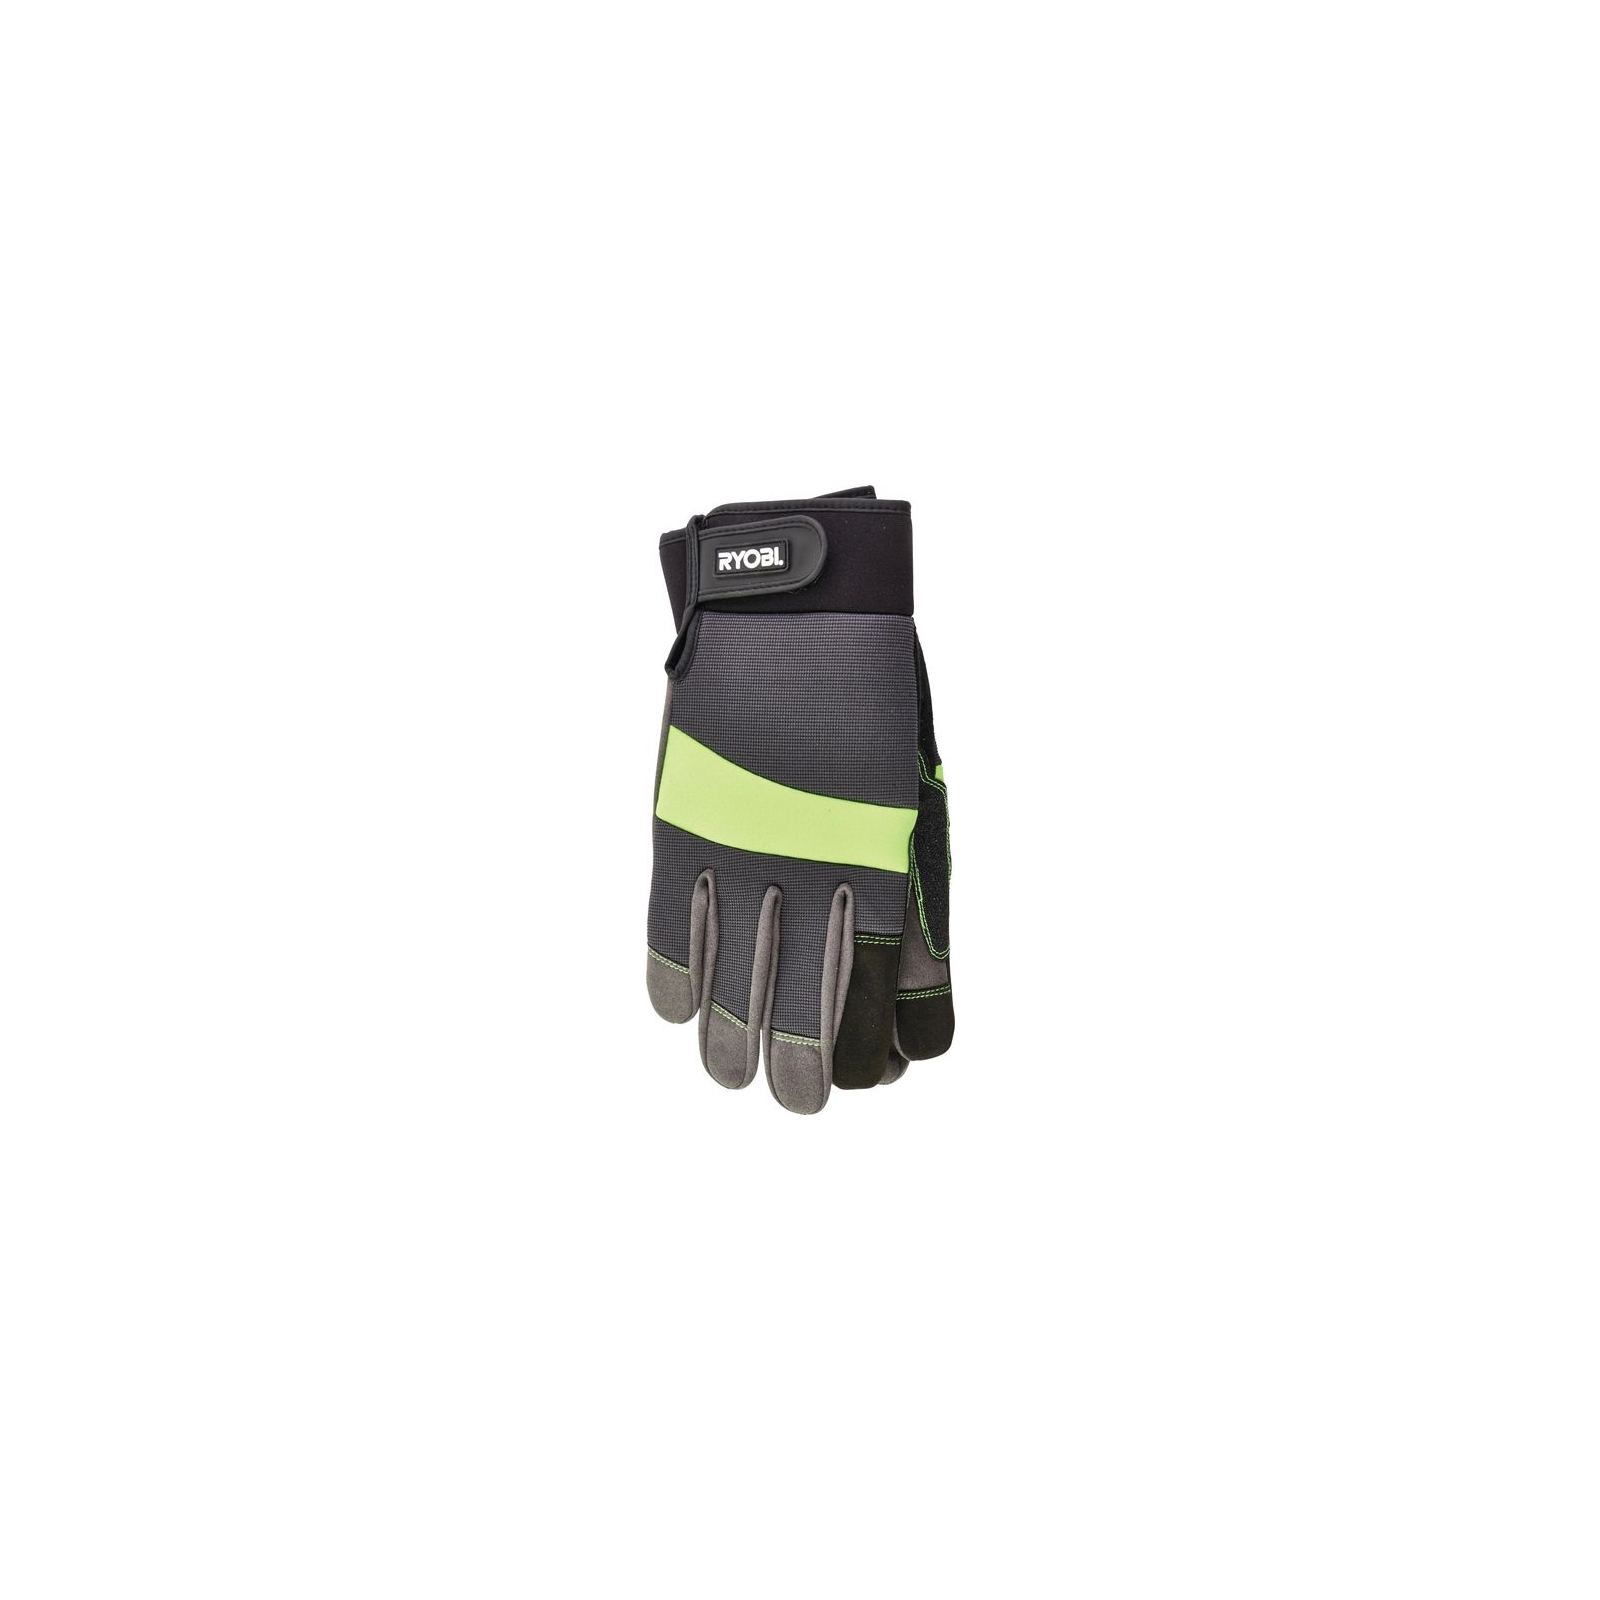 Захисні рукавиці Ryobi RAC811M, вологозахист, р. М (5132002992) зображення 2